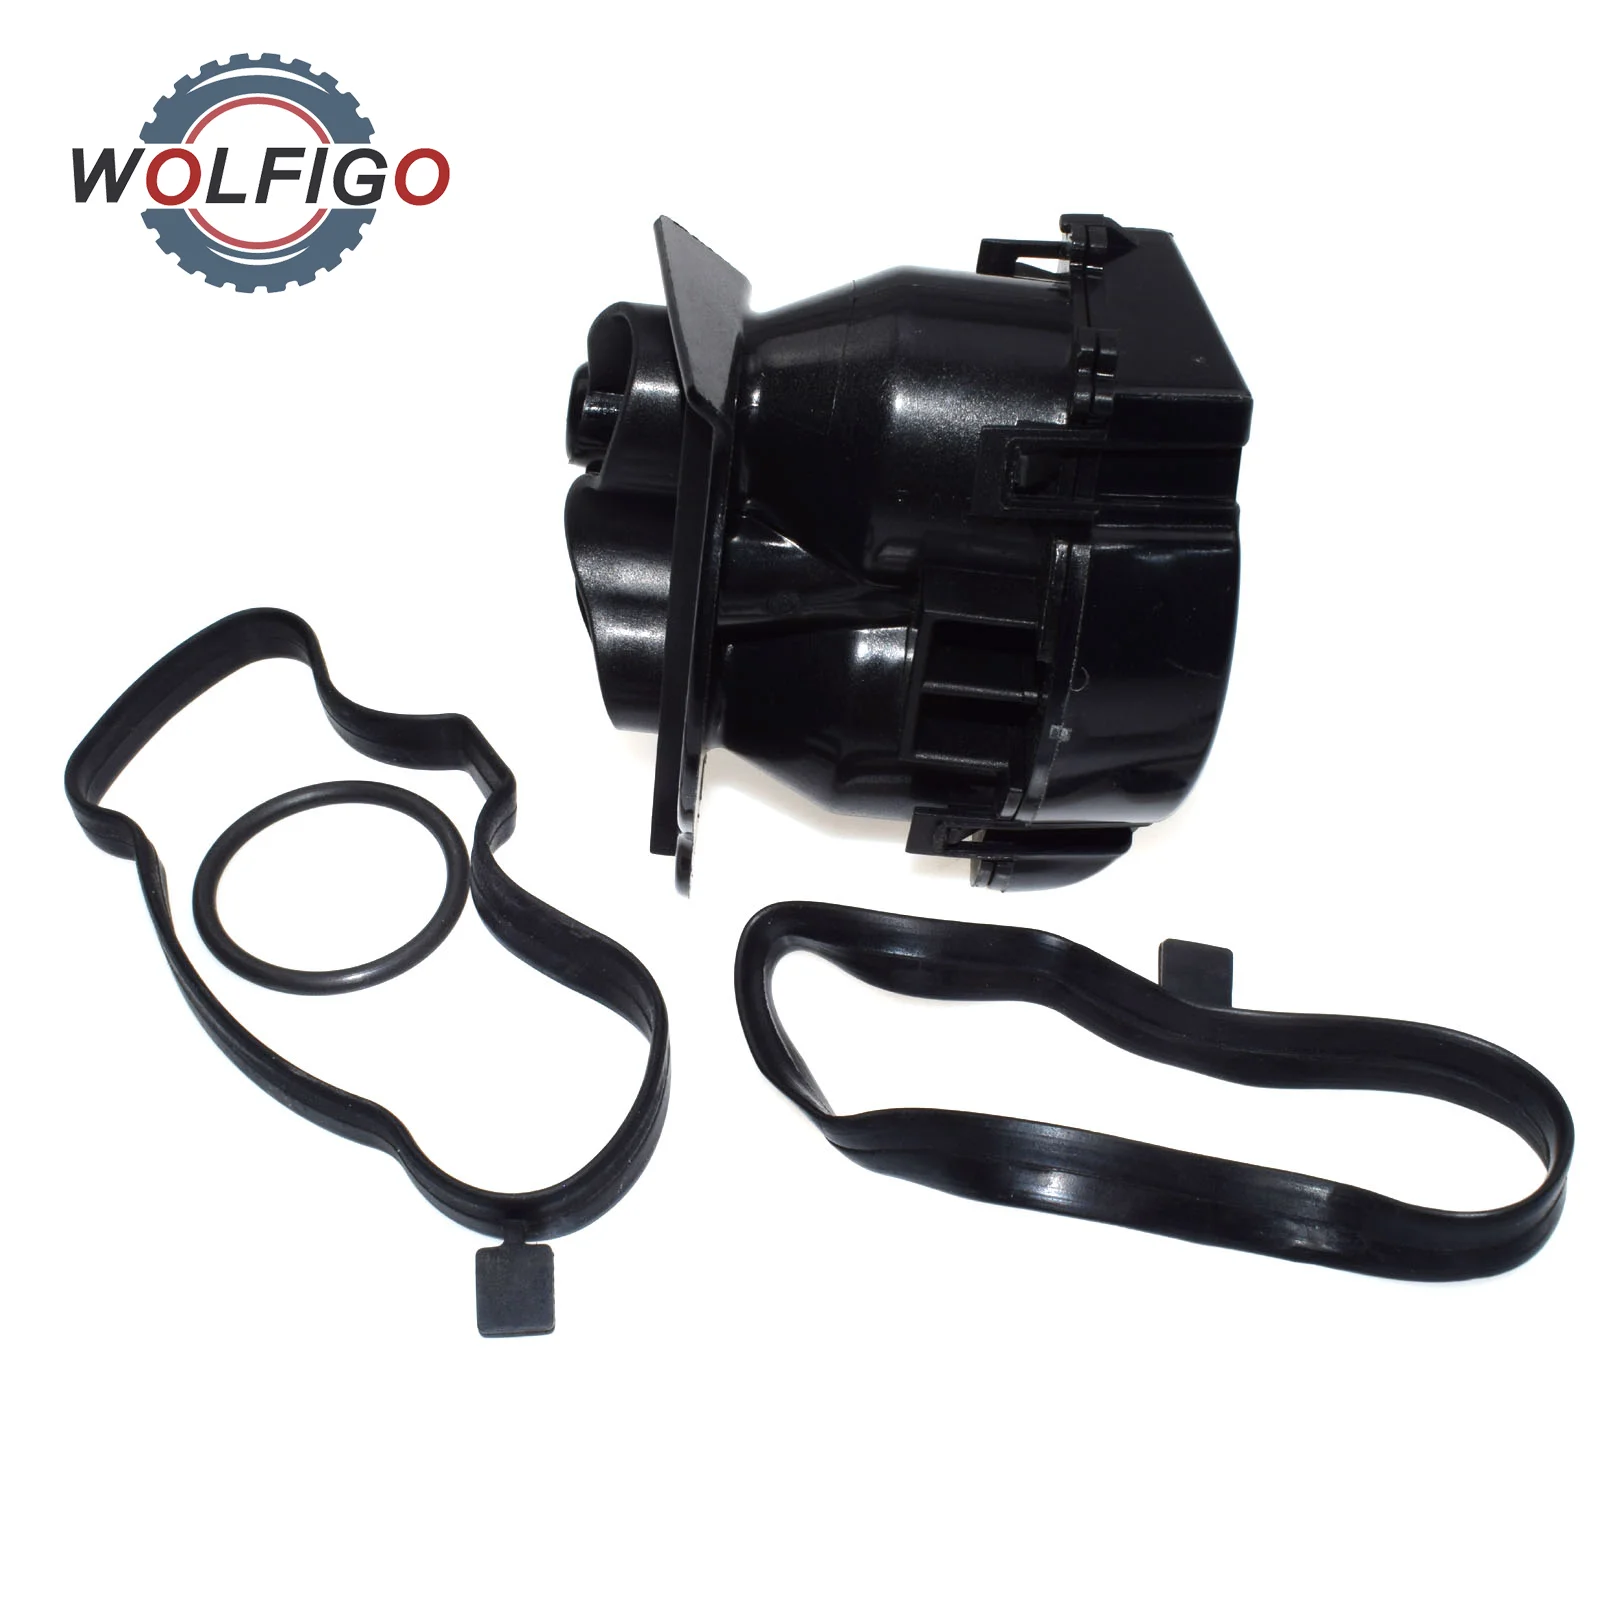 WOLFIGO масло Картера сепаратор фильтр с Комплект прокладок 11127799367 для BMW 1 3 5X3 E87 E46 E60 E61 e91 E83 320d 525d 730d